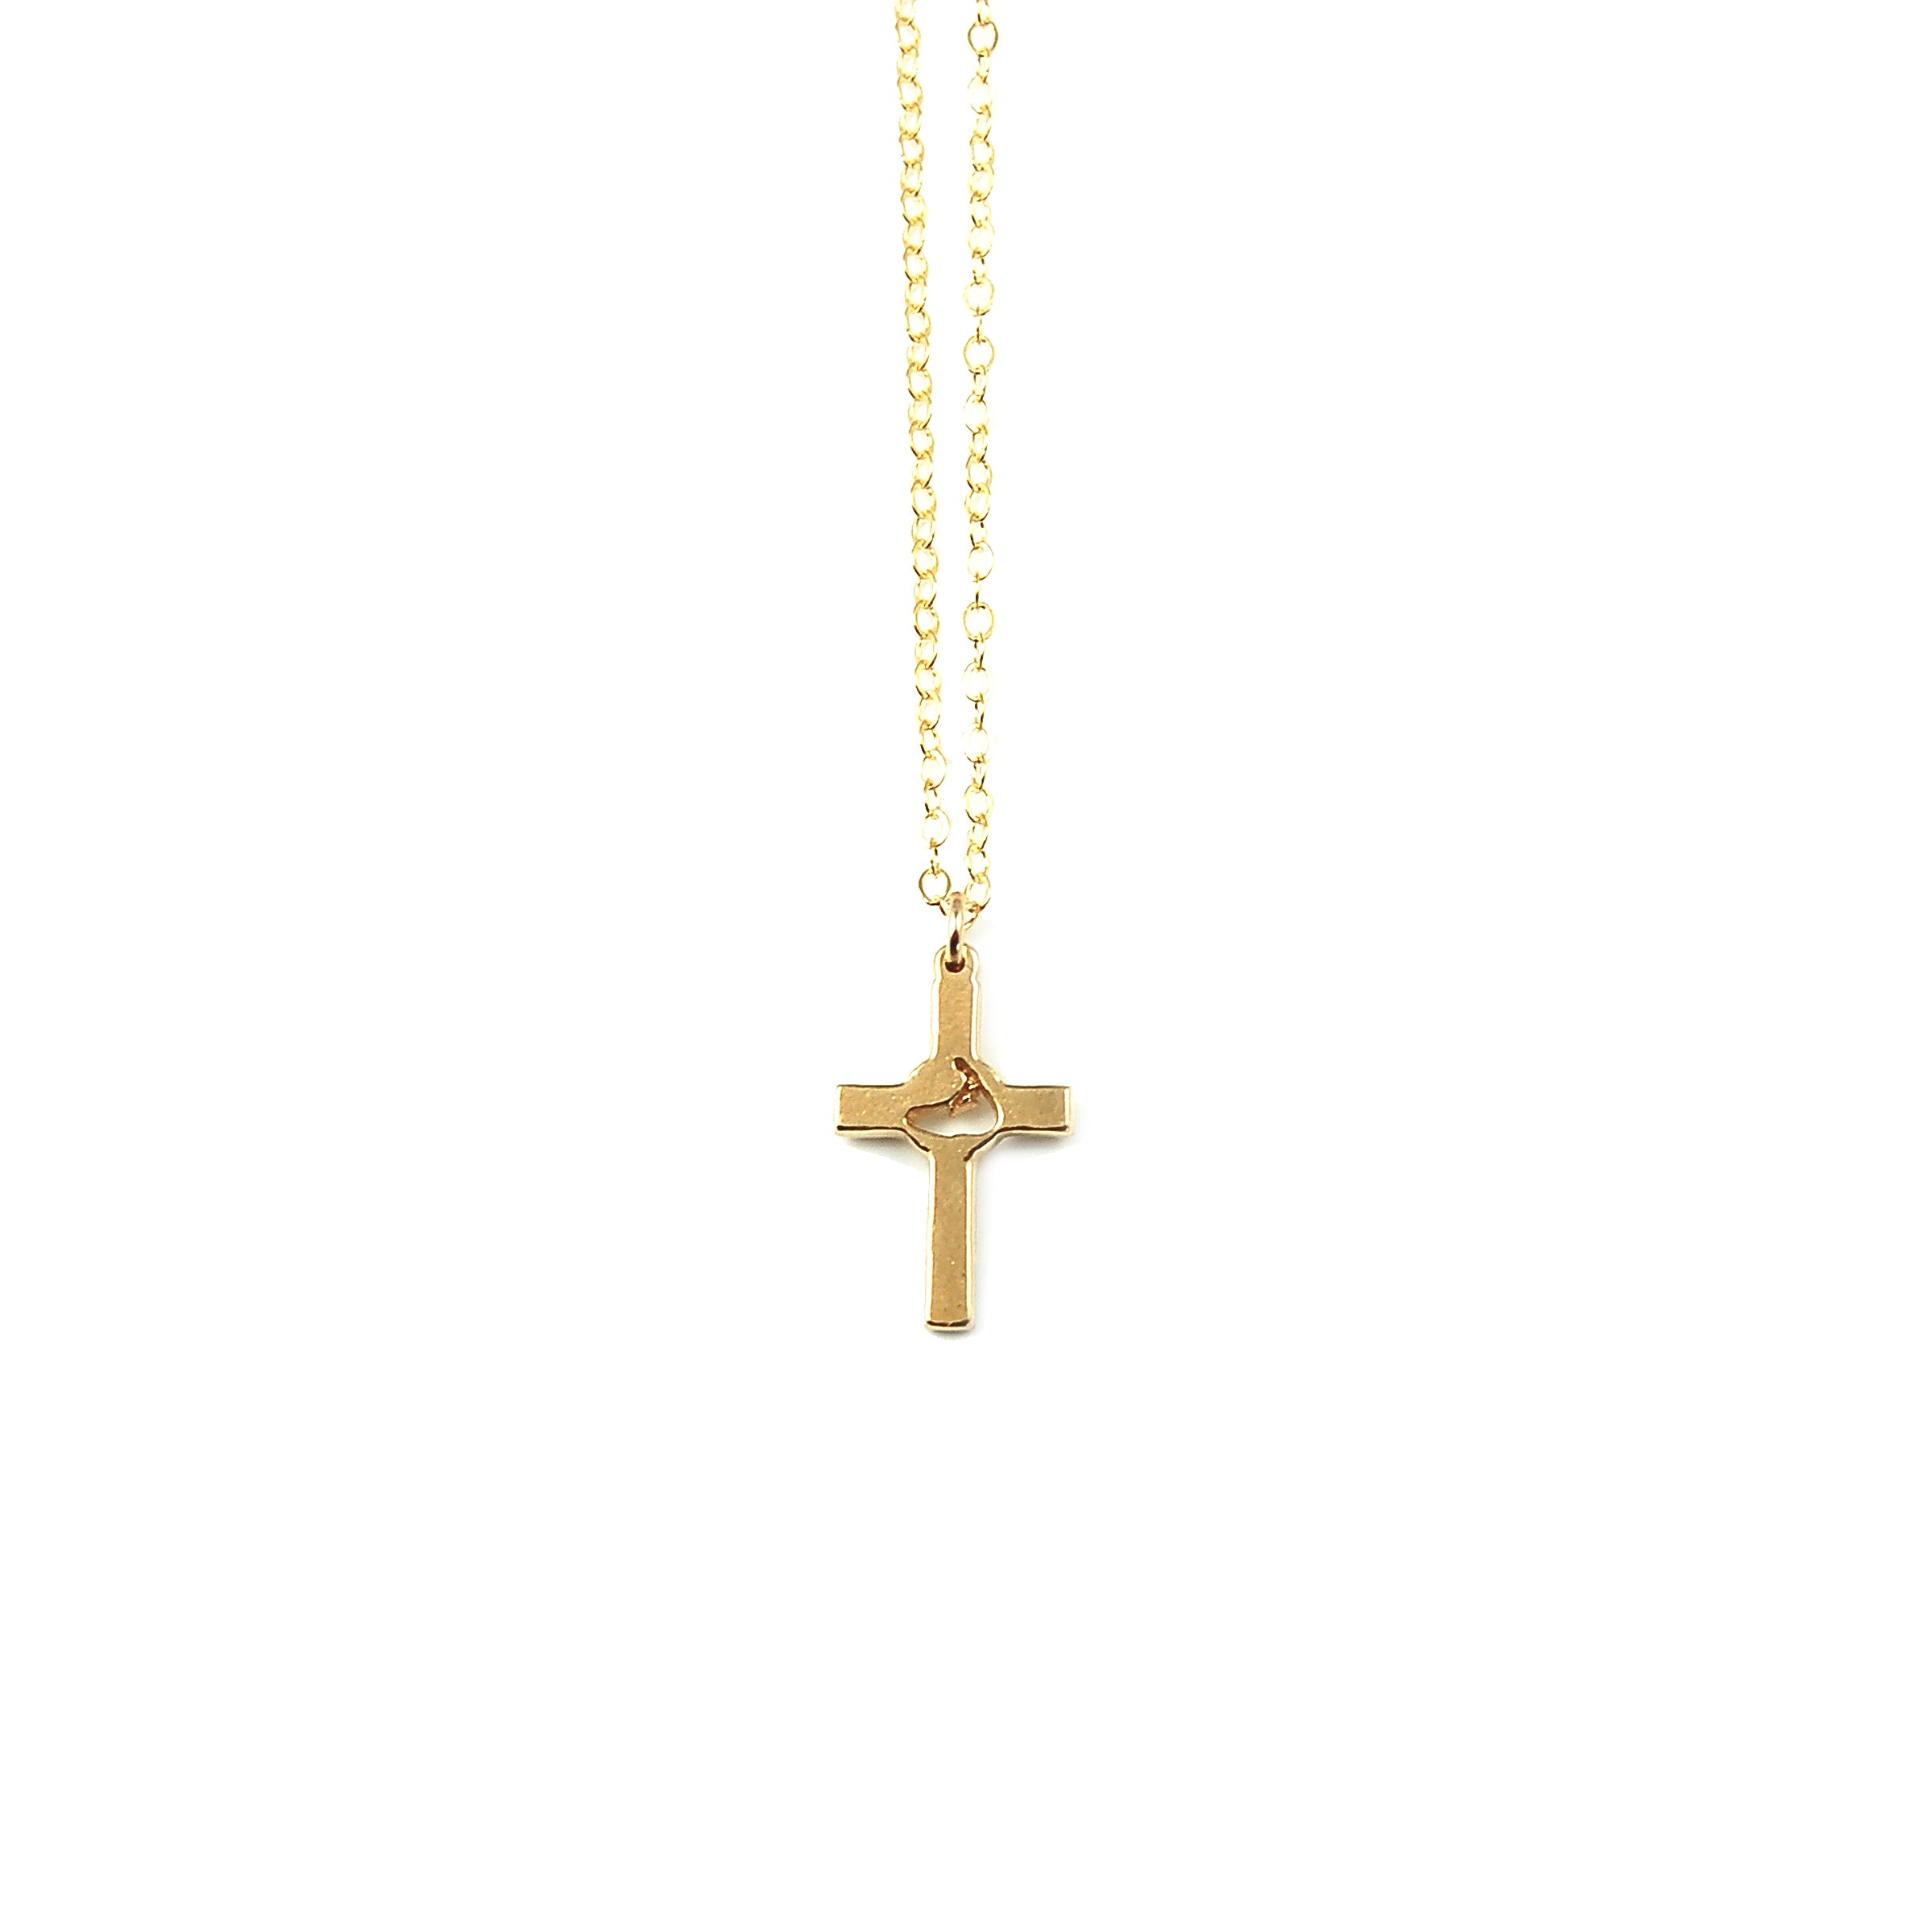 Nantucket Cross Necklace ©